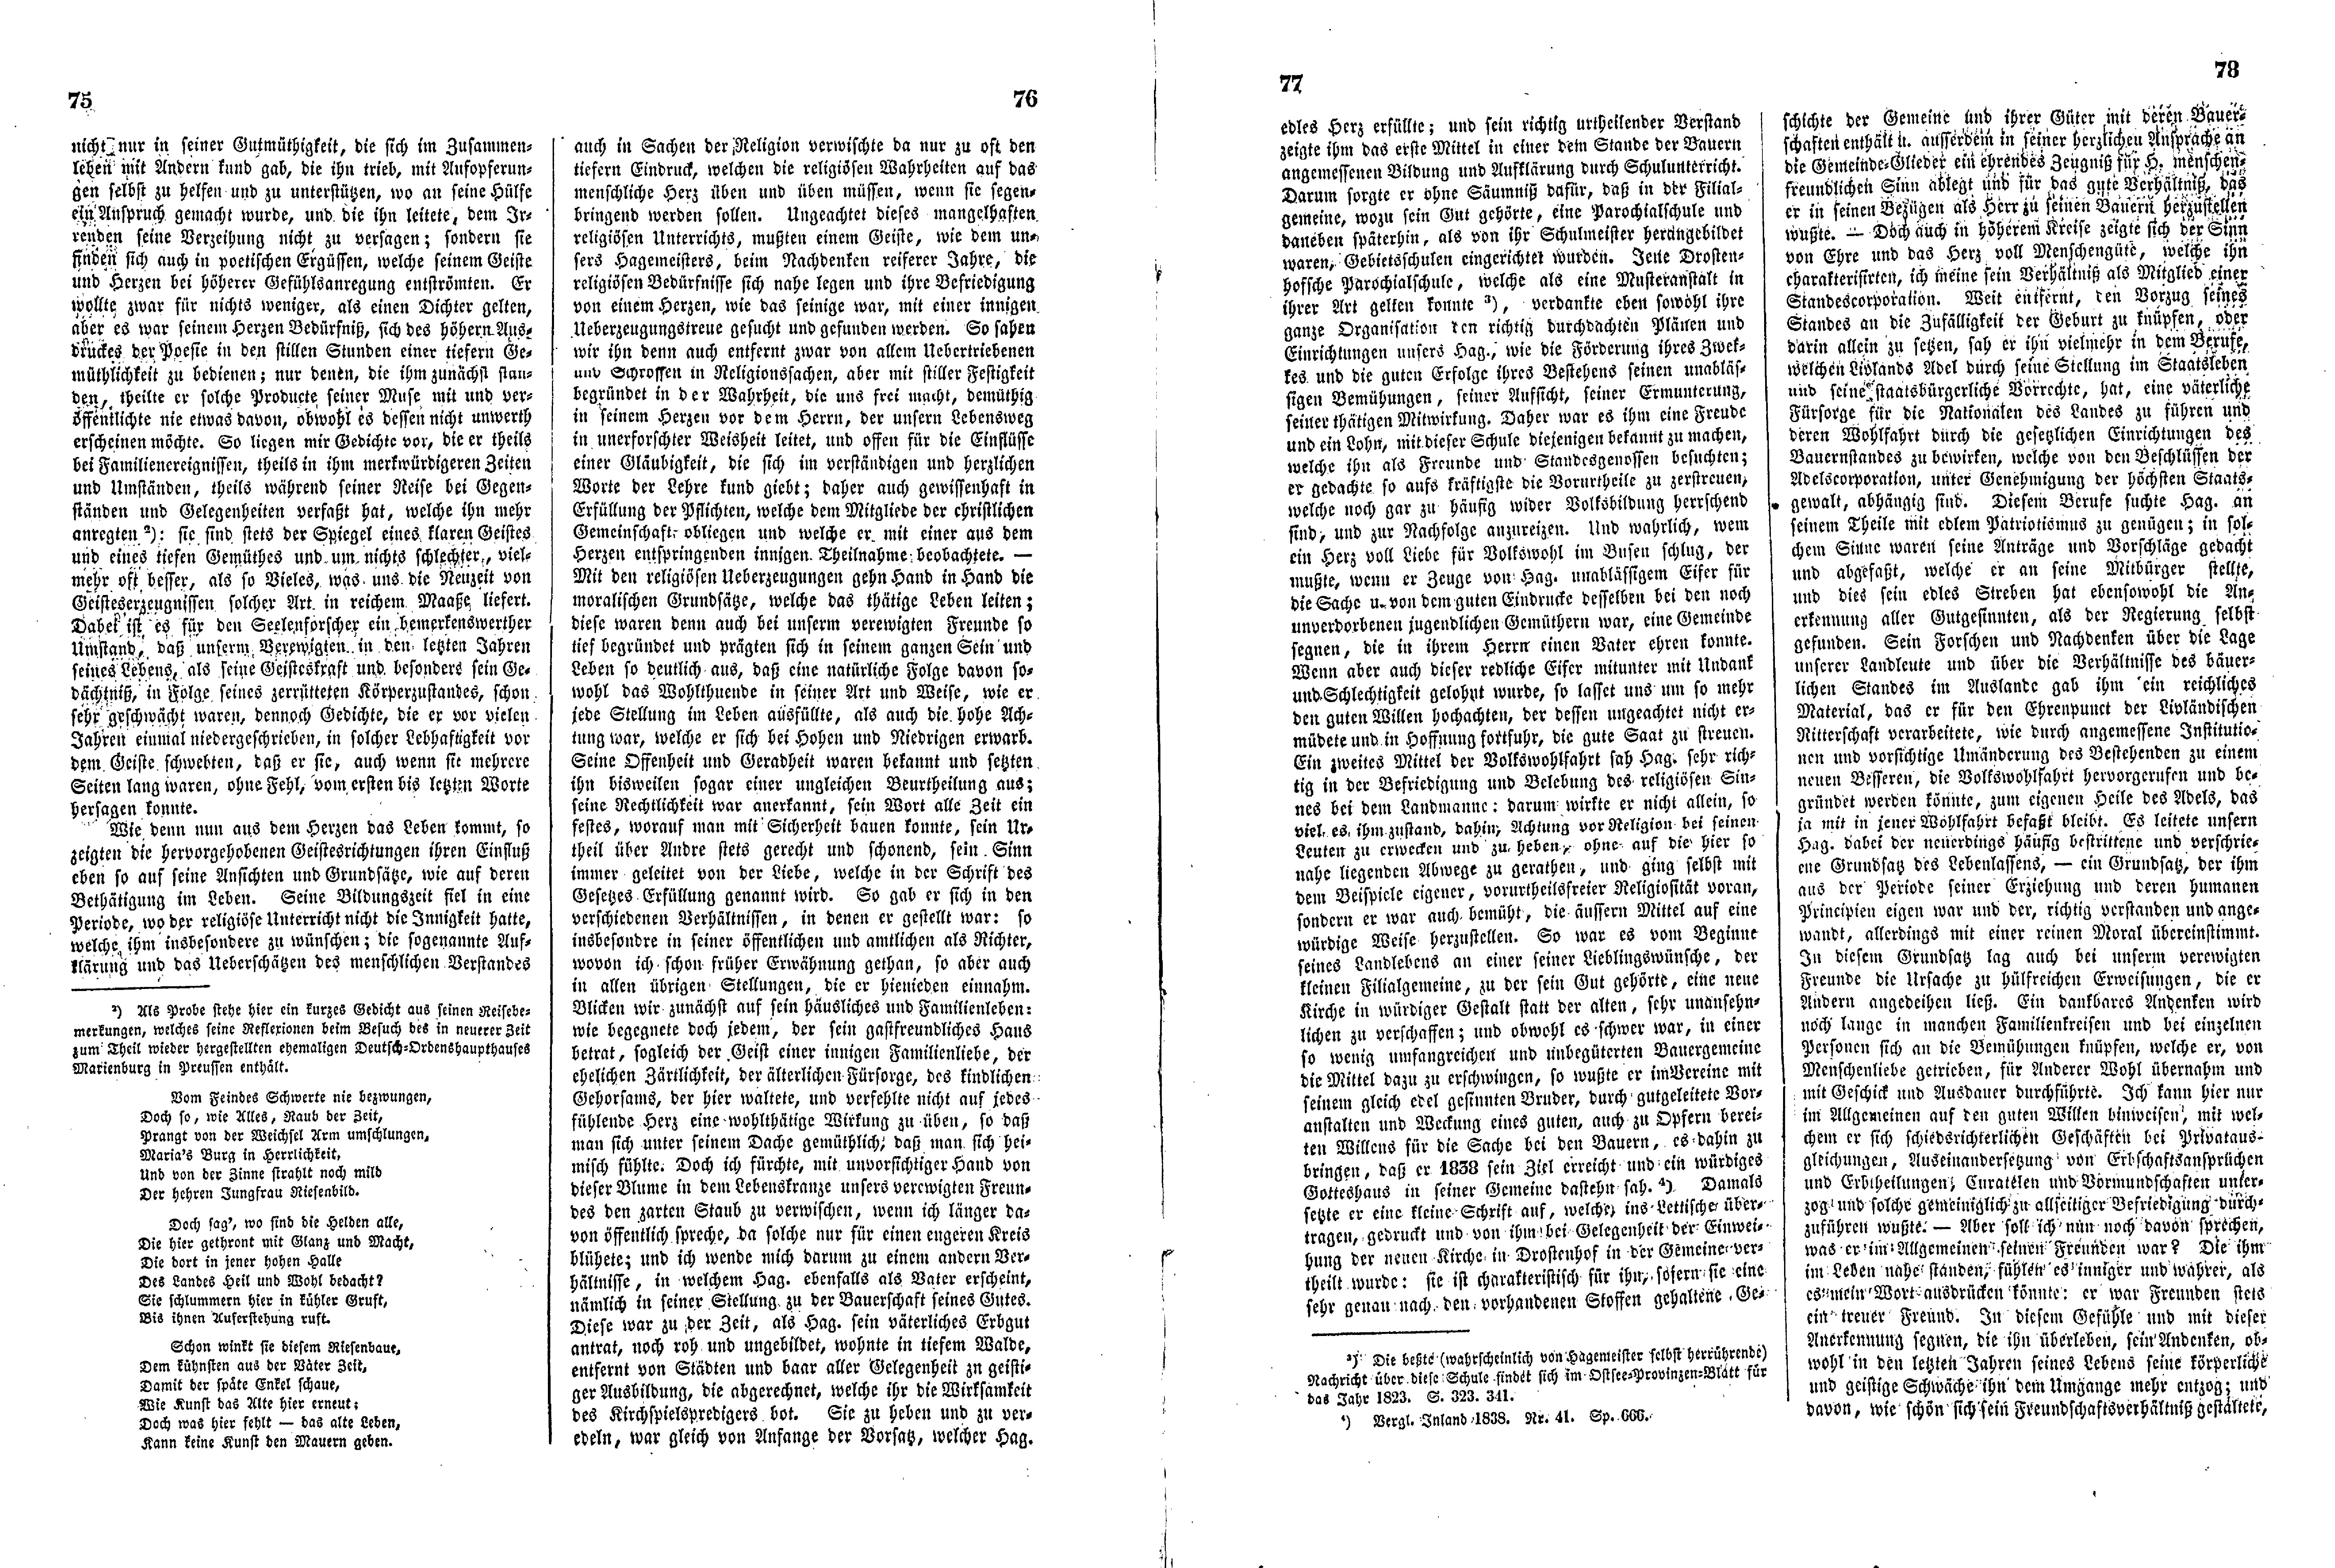 Das Inland [11] (1846) | 24. (75-78) Haupttext